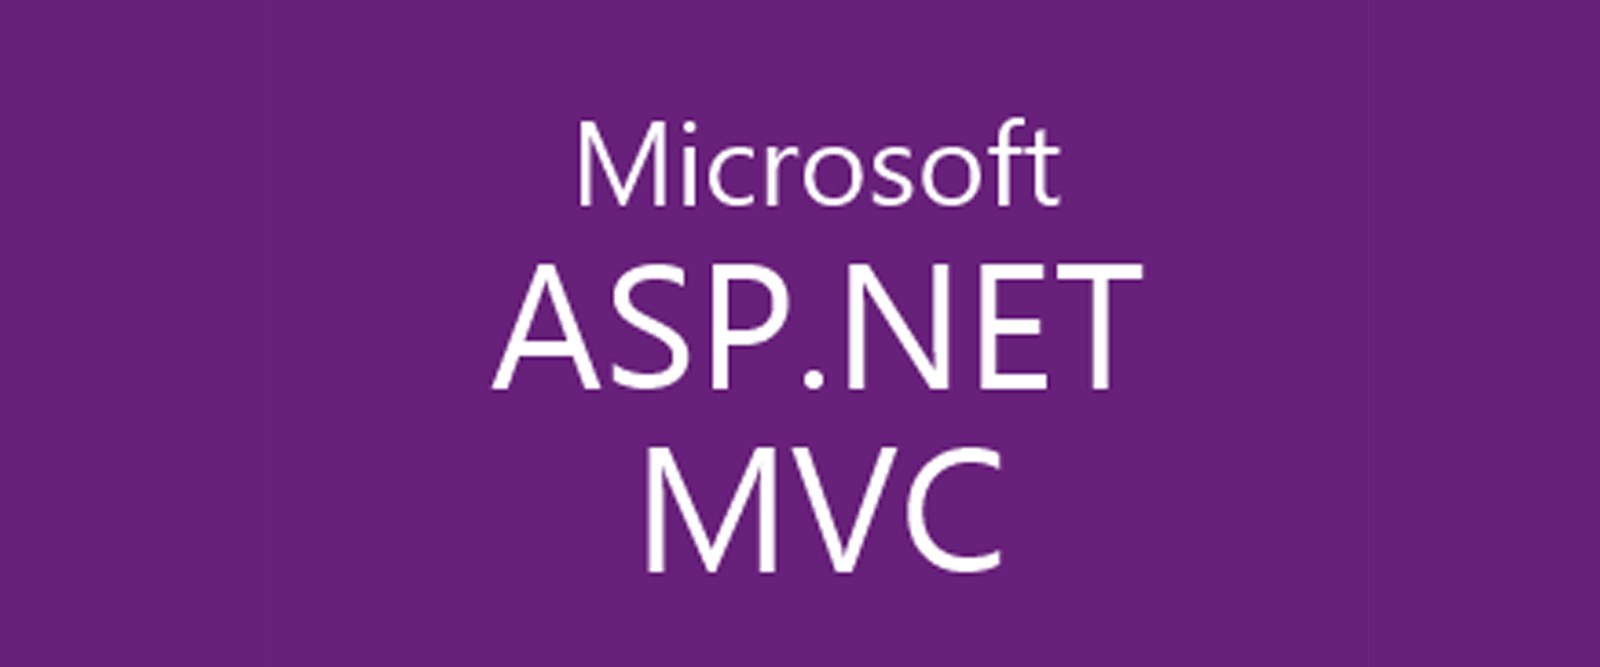 Asp.net Razor Logo - Dynamic Accordion menu or Vertical menu using jQuery in ASP.NET MVC